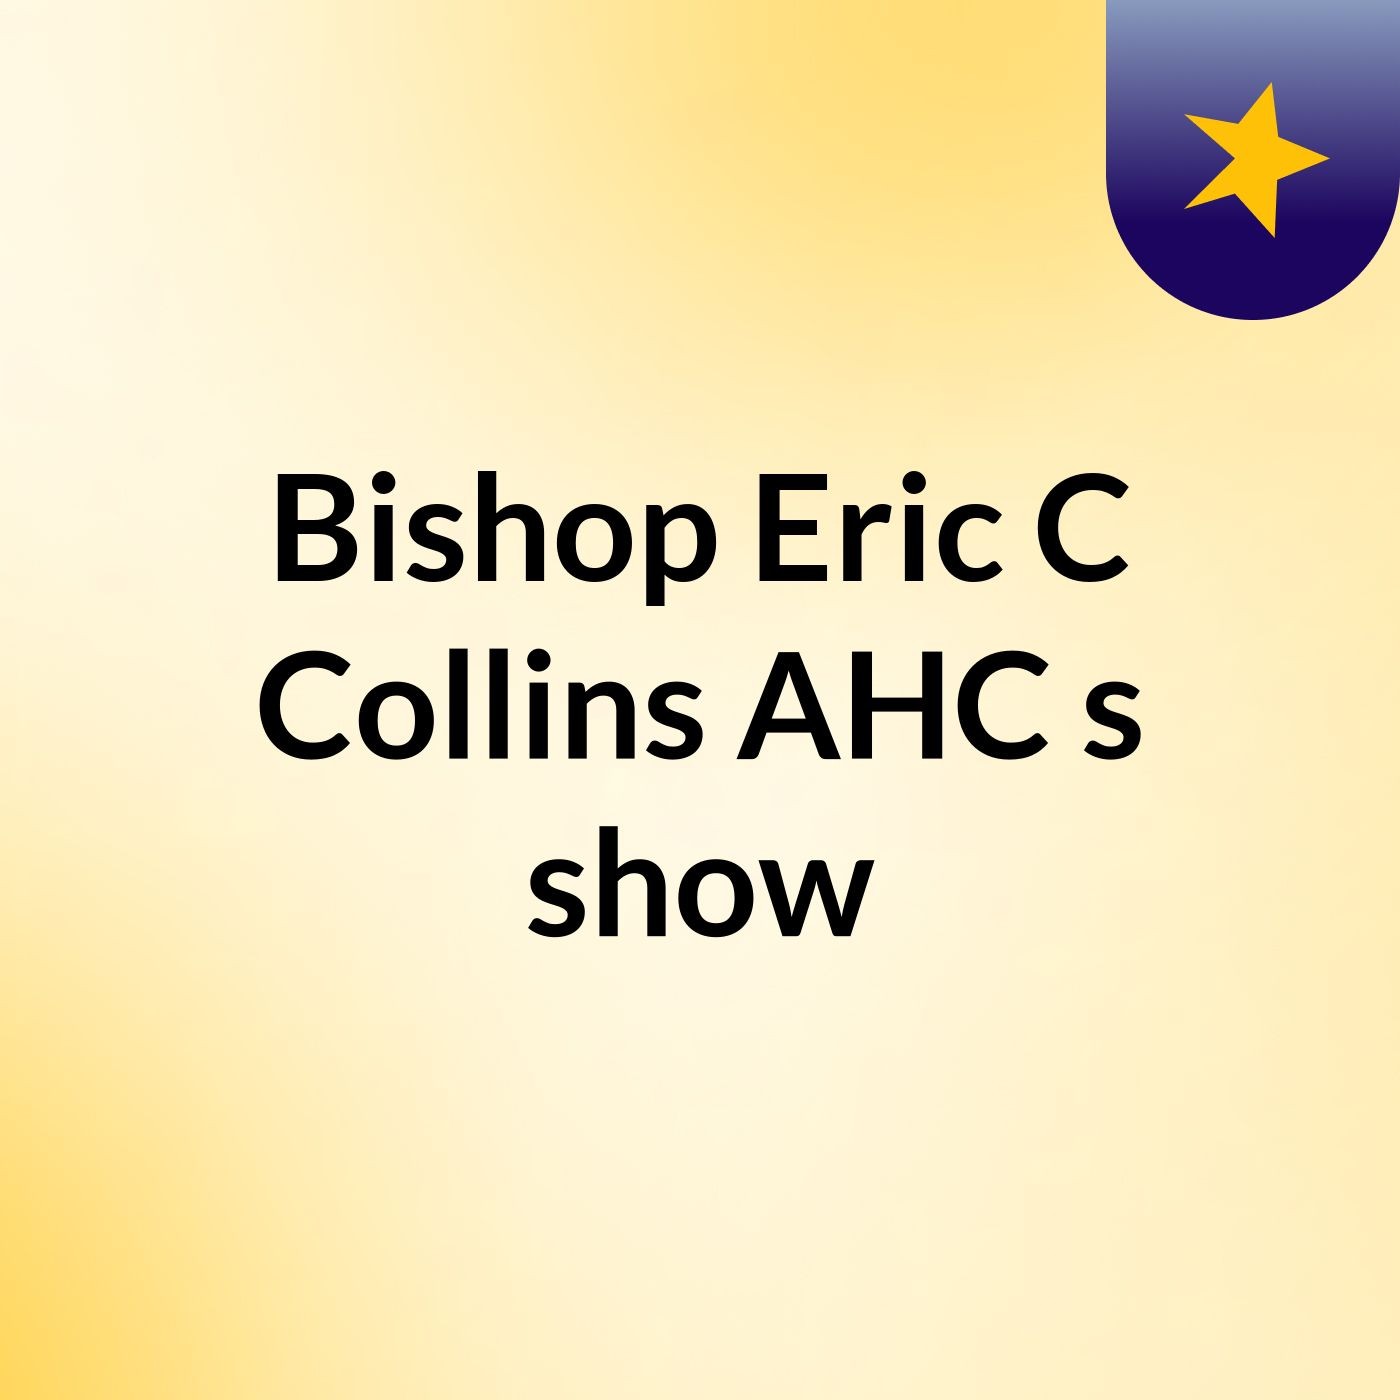 Bishop Eric C Collins AHC's show